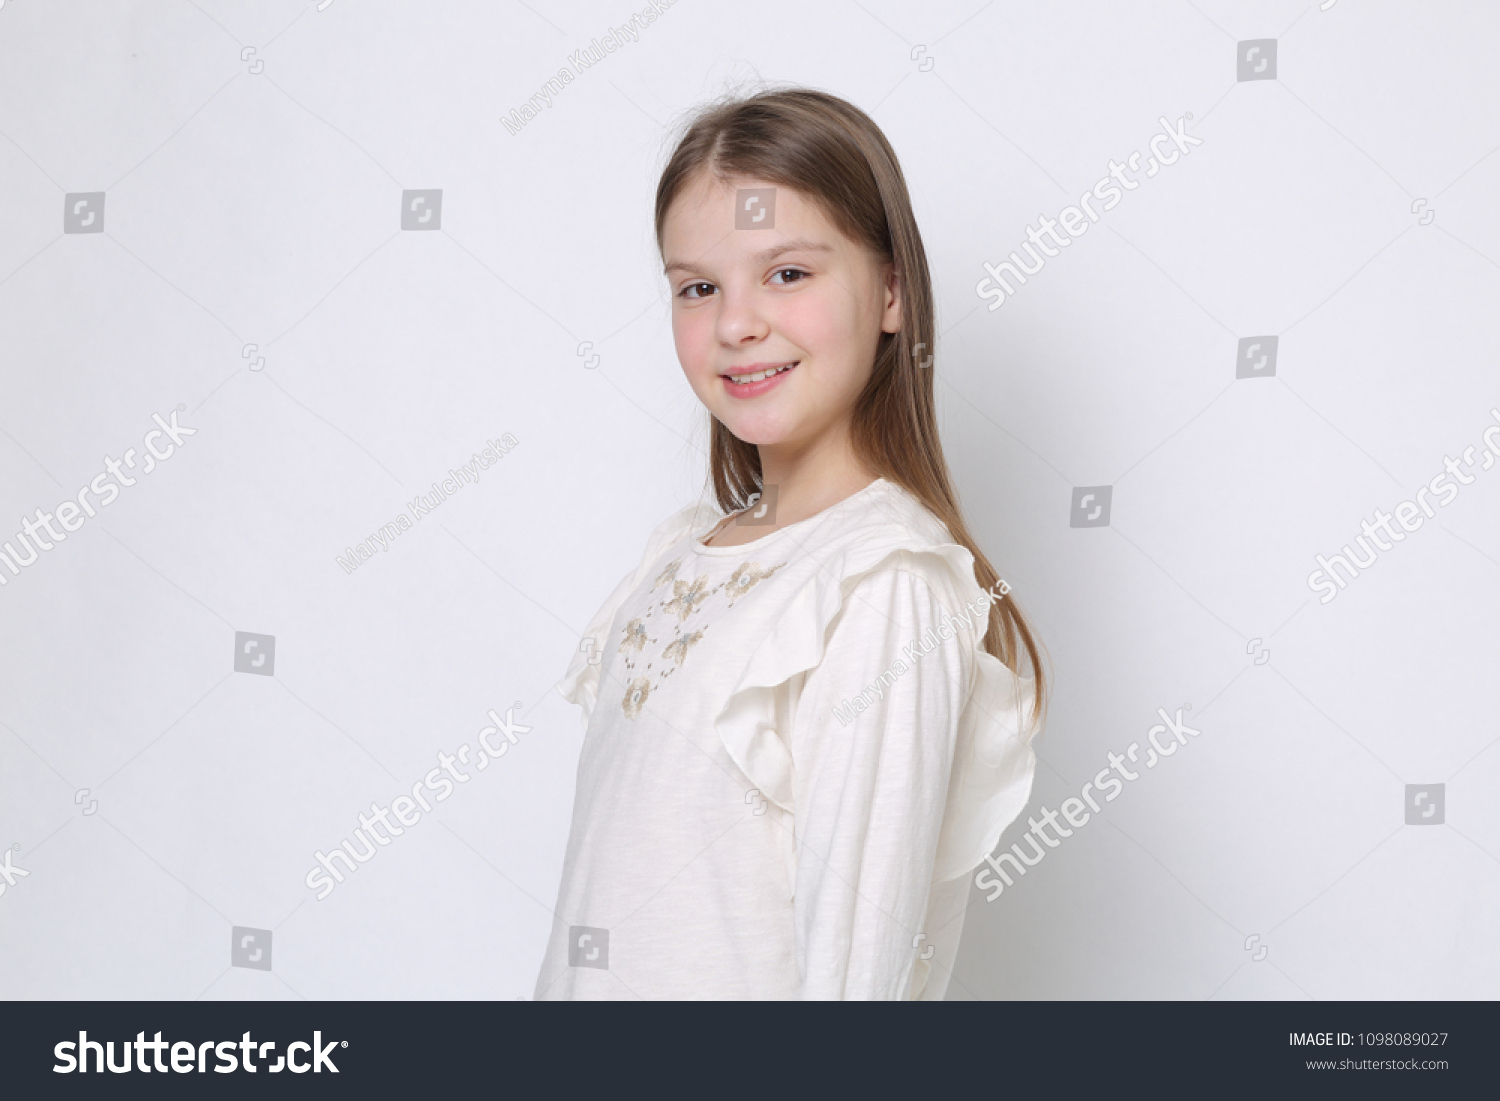 Lovely Smiley Teen Portrait Stock Photo 1098089027 | Shutterstock